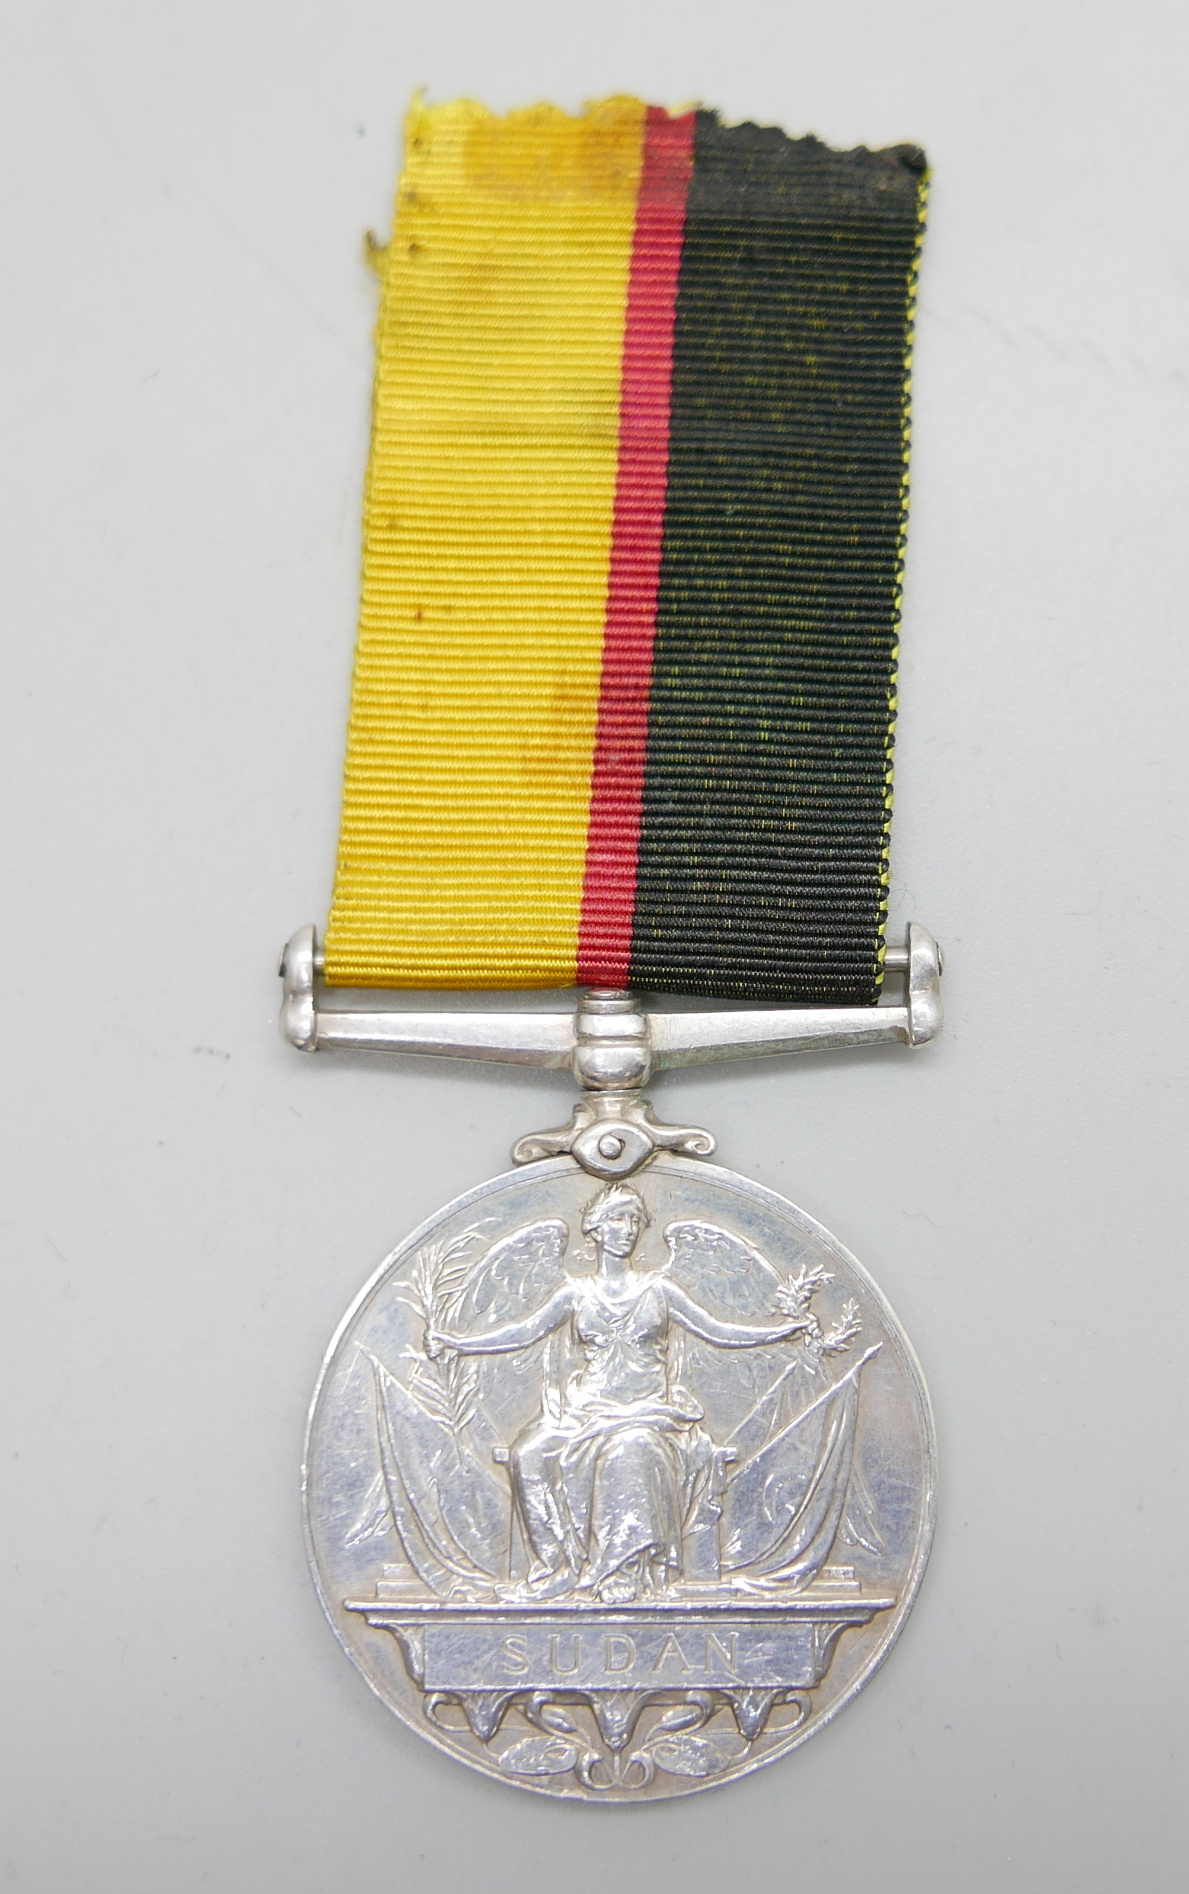 A Queen Victoria Sudan medal, rim a/f, renamed - Image 4 of 6